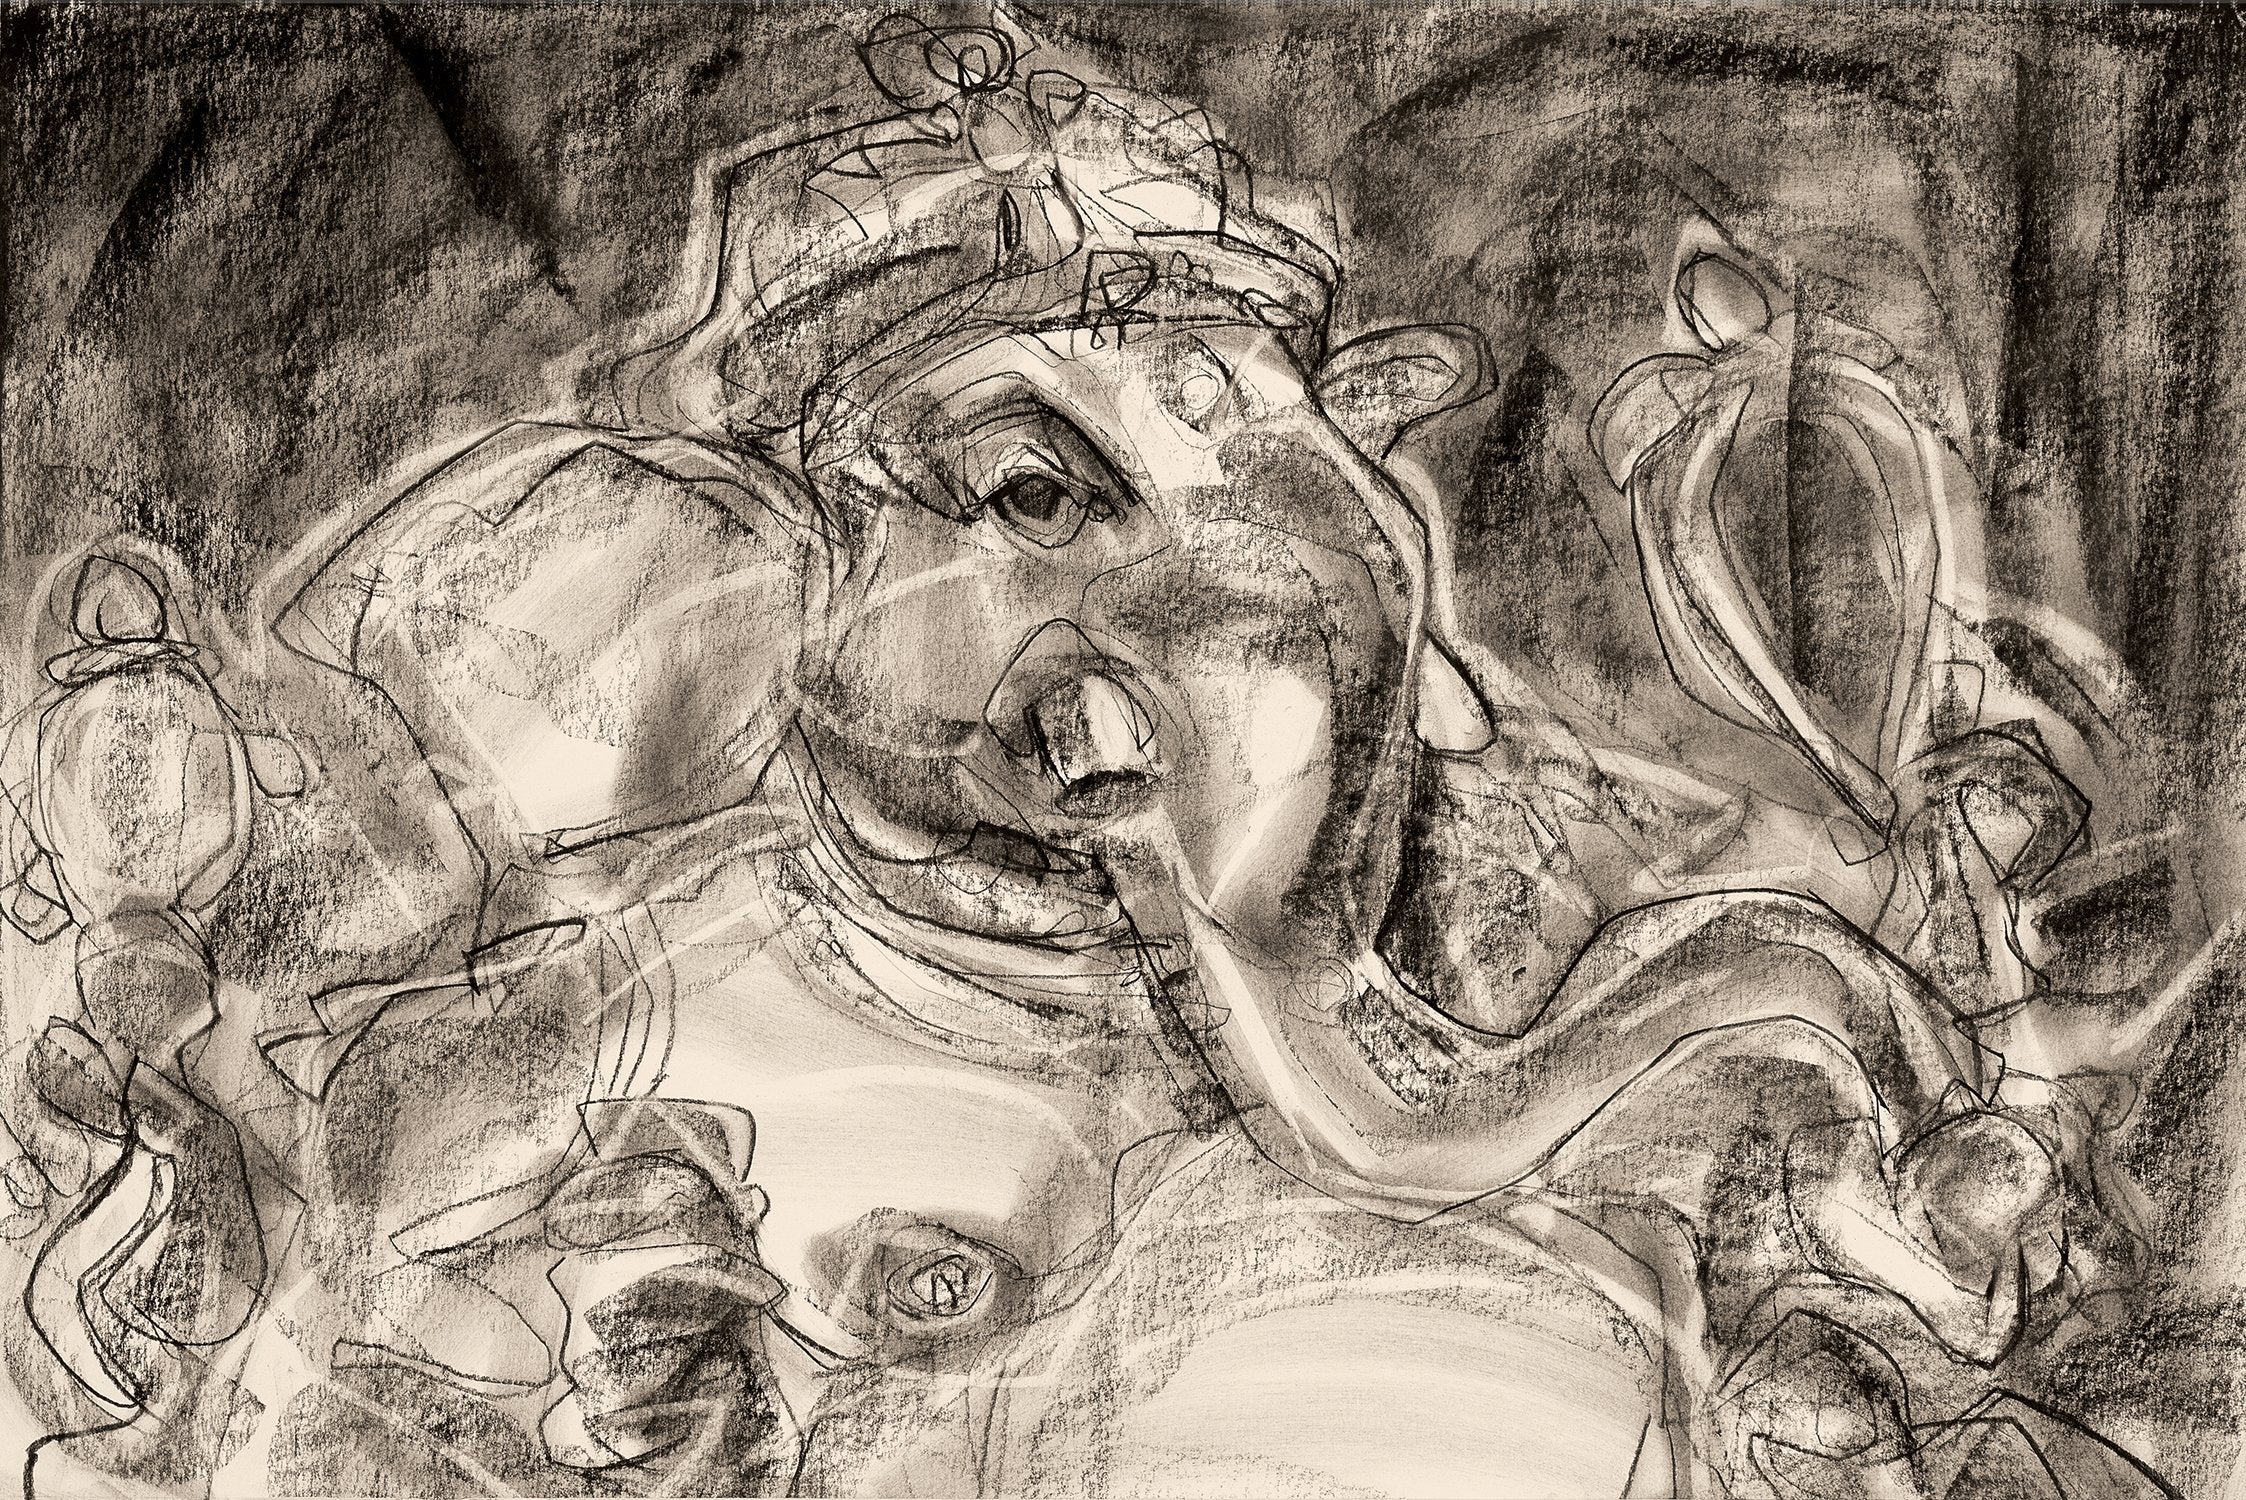 Vinnayagar II|S. Mark Rathinaraj- Charcoal on Board, , 18.5 x 28 inches